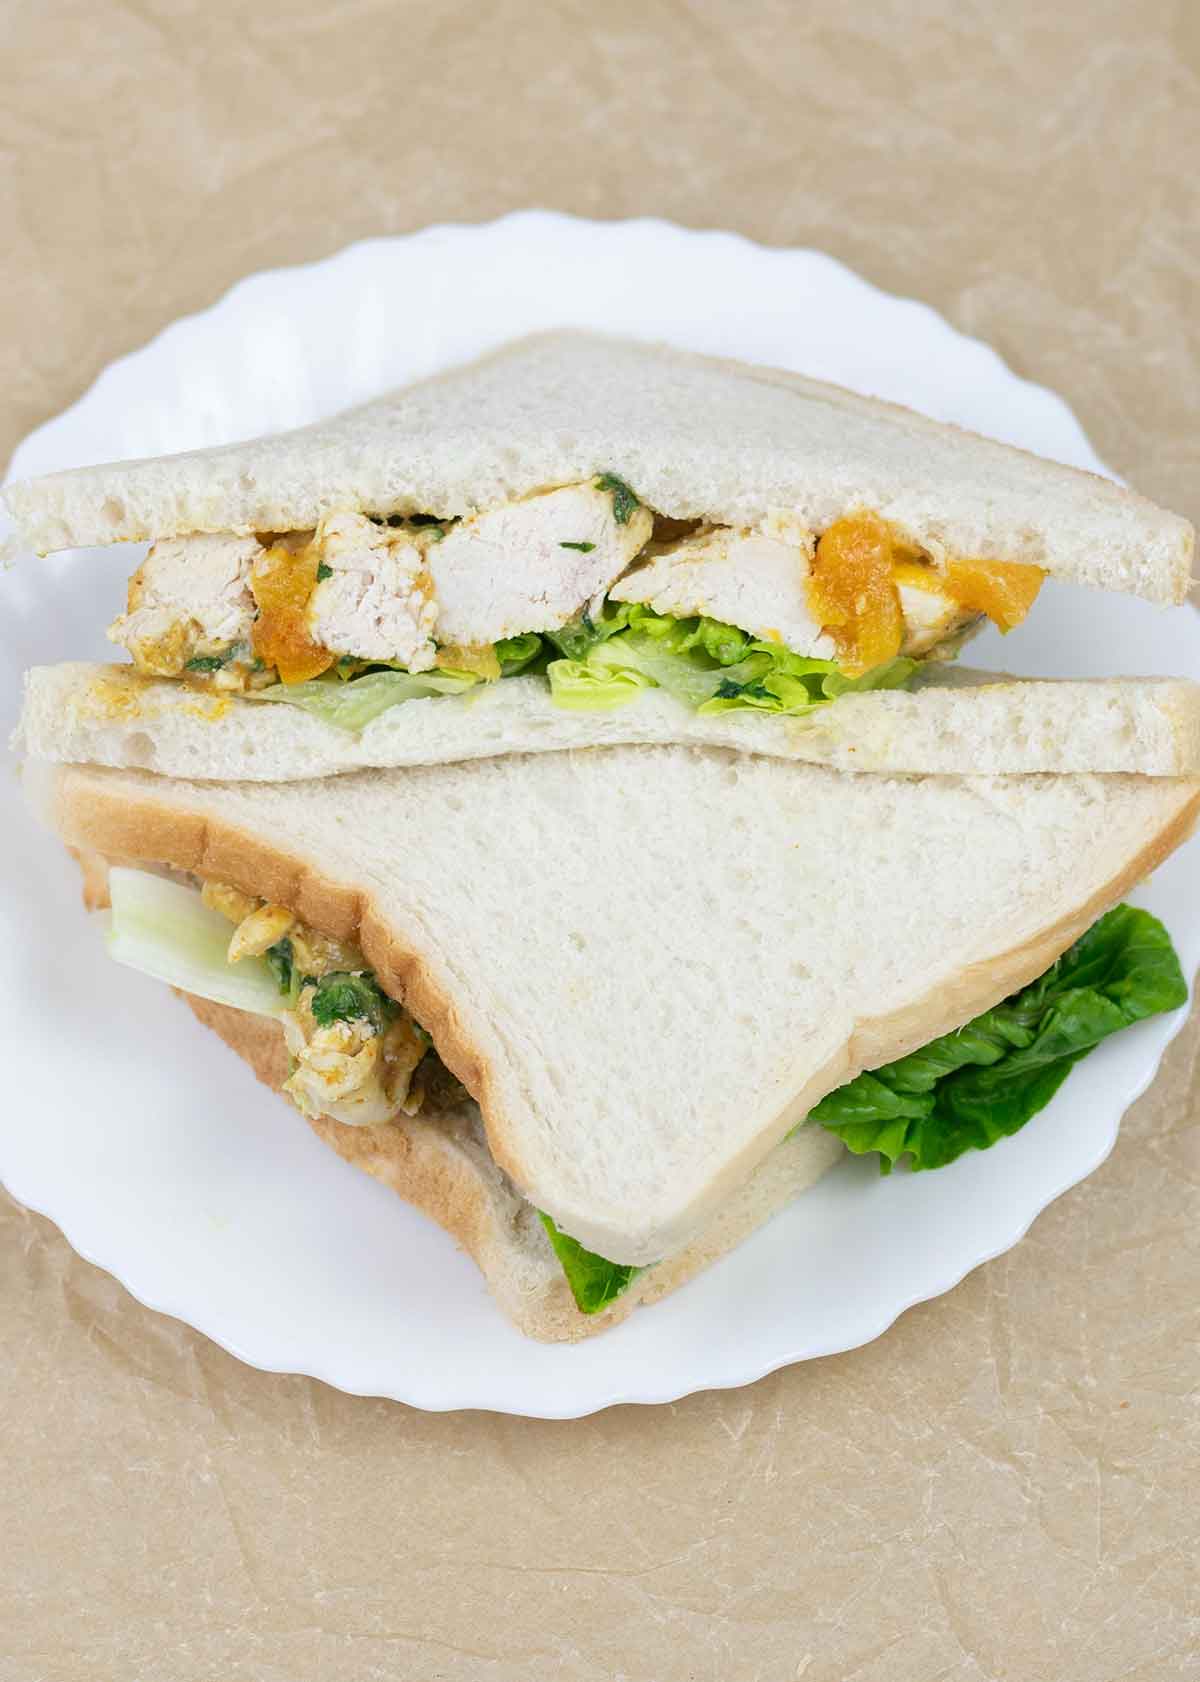 Coronation chicken sandwich in a plate.